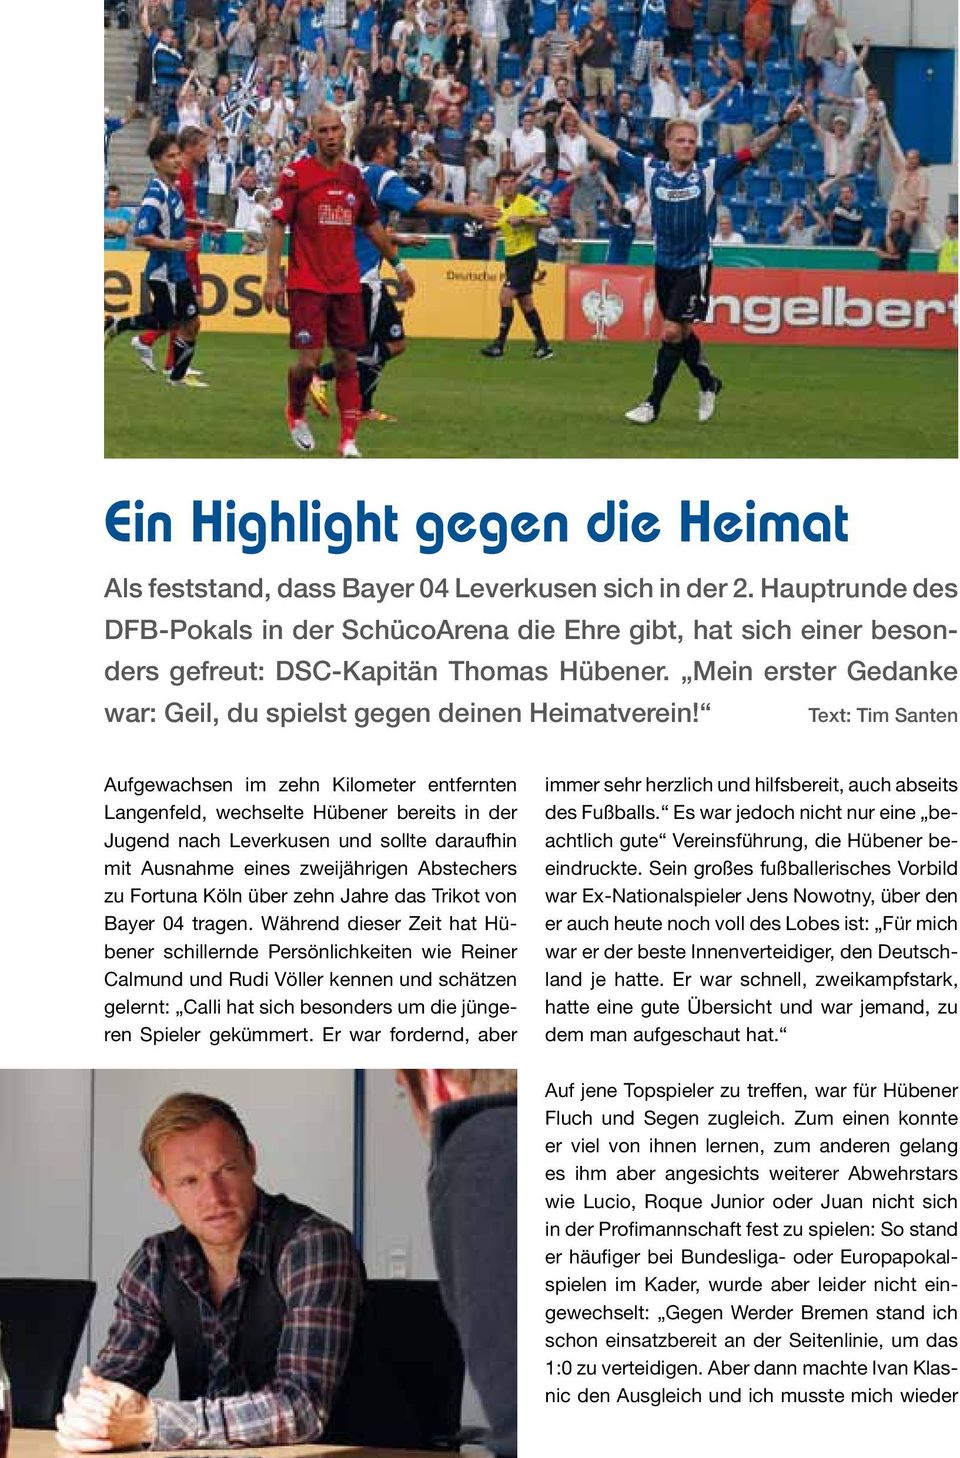 Text: Tim Santen Aufgewachsen im zehn Kilometer entfernten Langenfeld, wechselte Hübener bereits in der Jugend nach Leverkusen und sollte daraufhin mit Ausnahme eines zweijährigen Abstechers zu